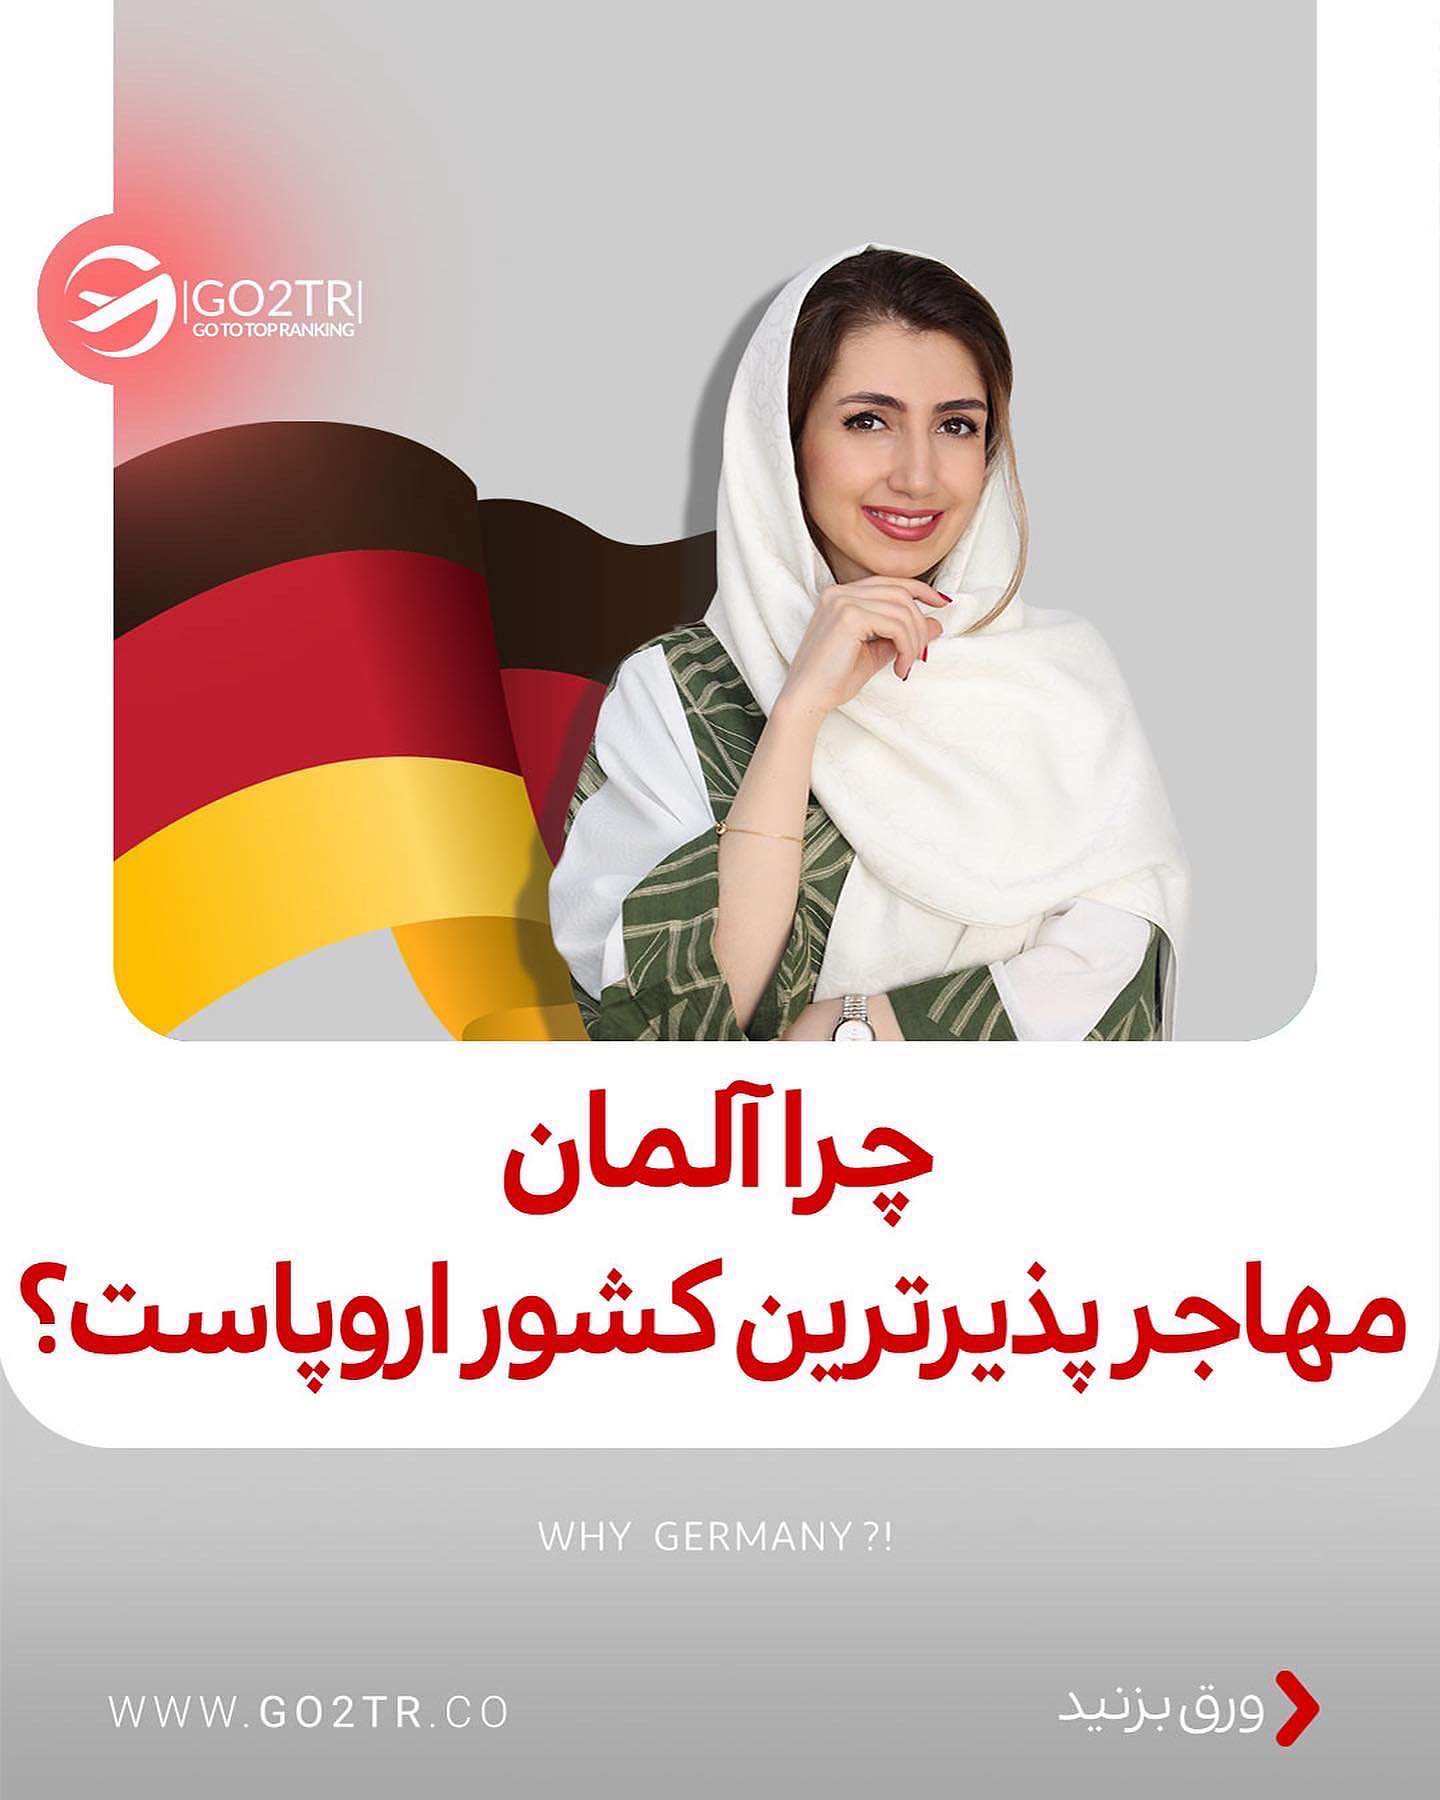 آلمان شدیدا نیروی کار میخواد 😱 تازه تحصیل هم برای دانشجوهای خارجی تو آلمان ر